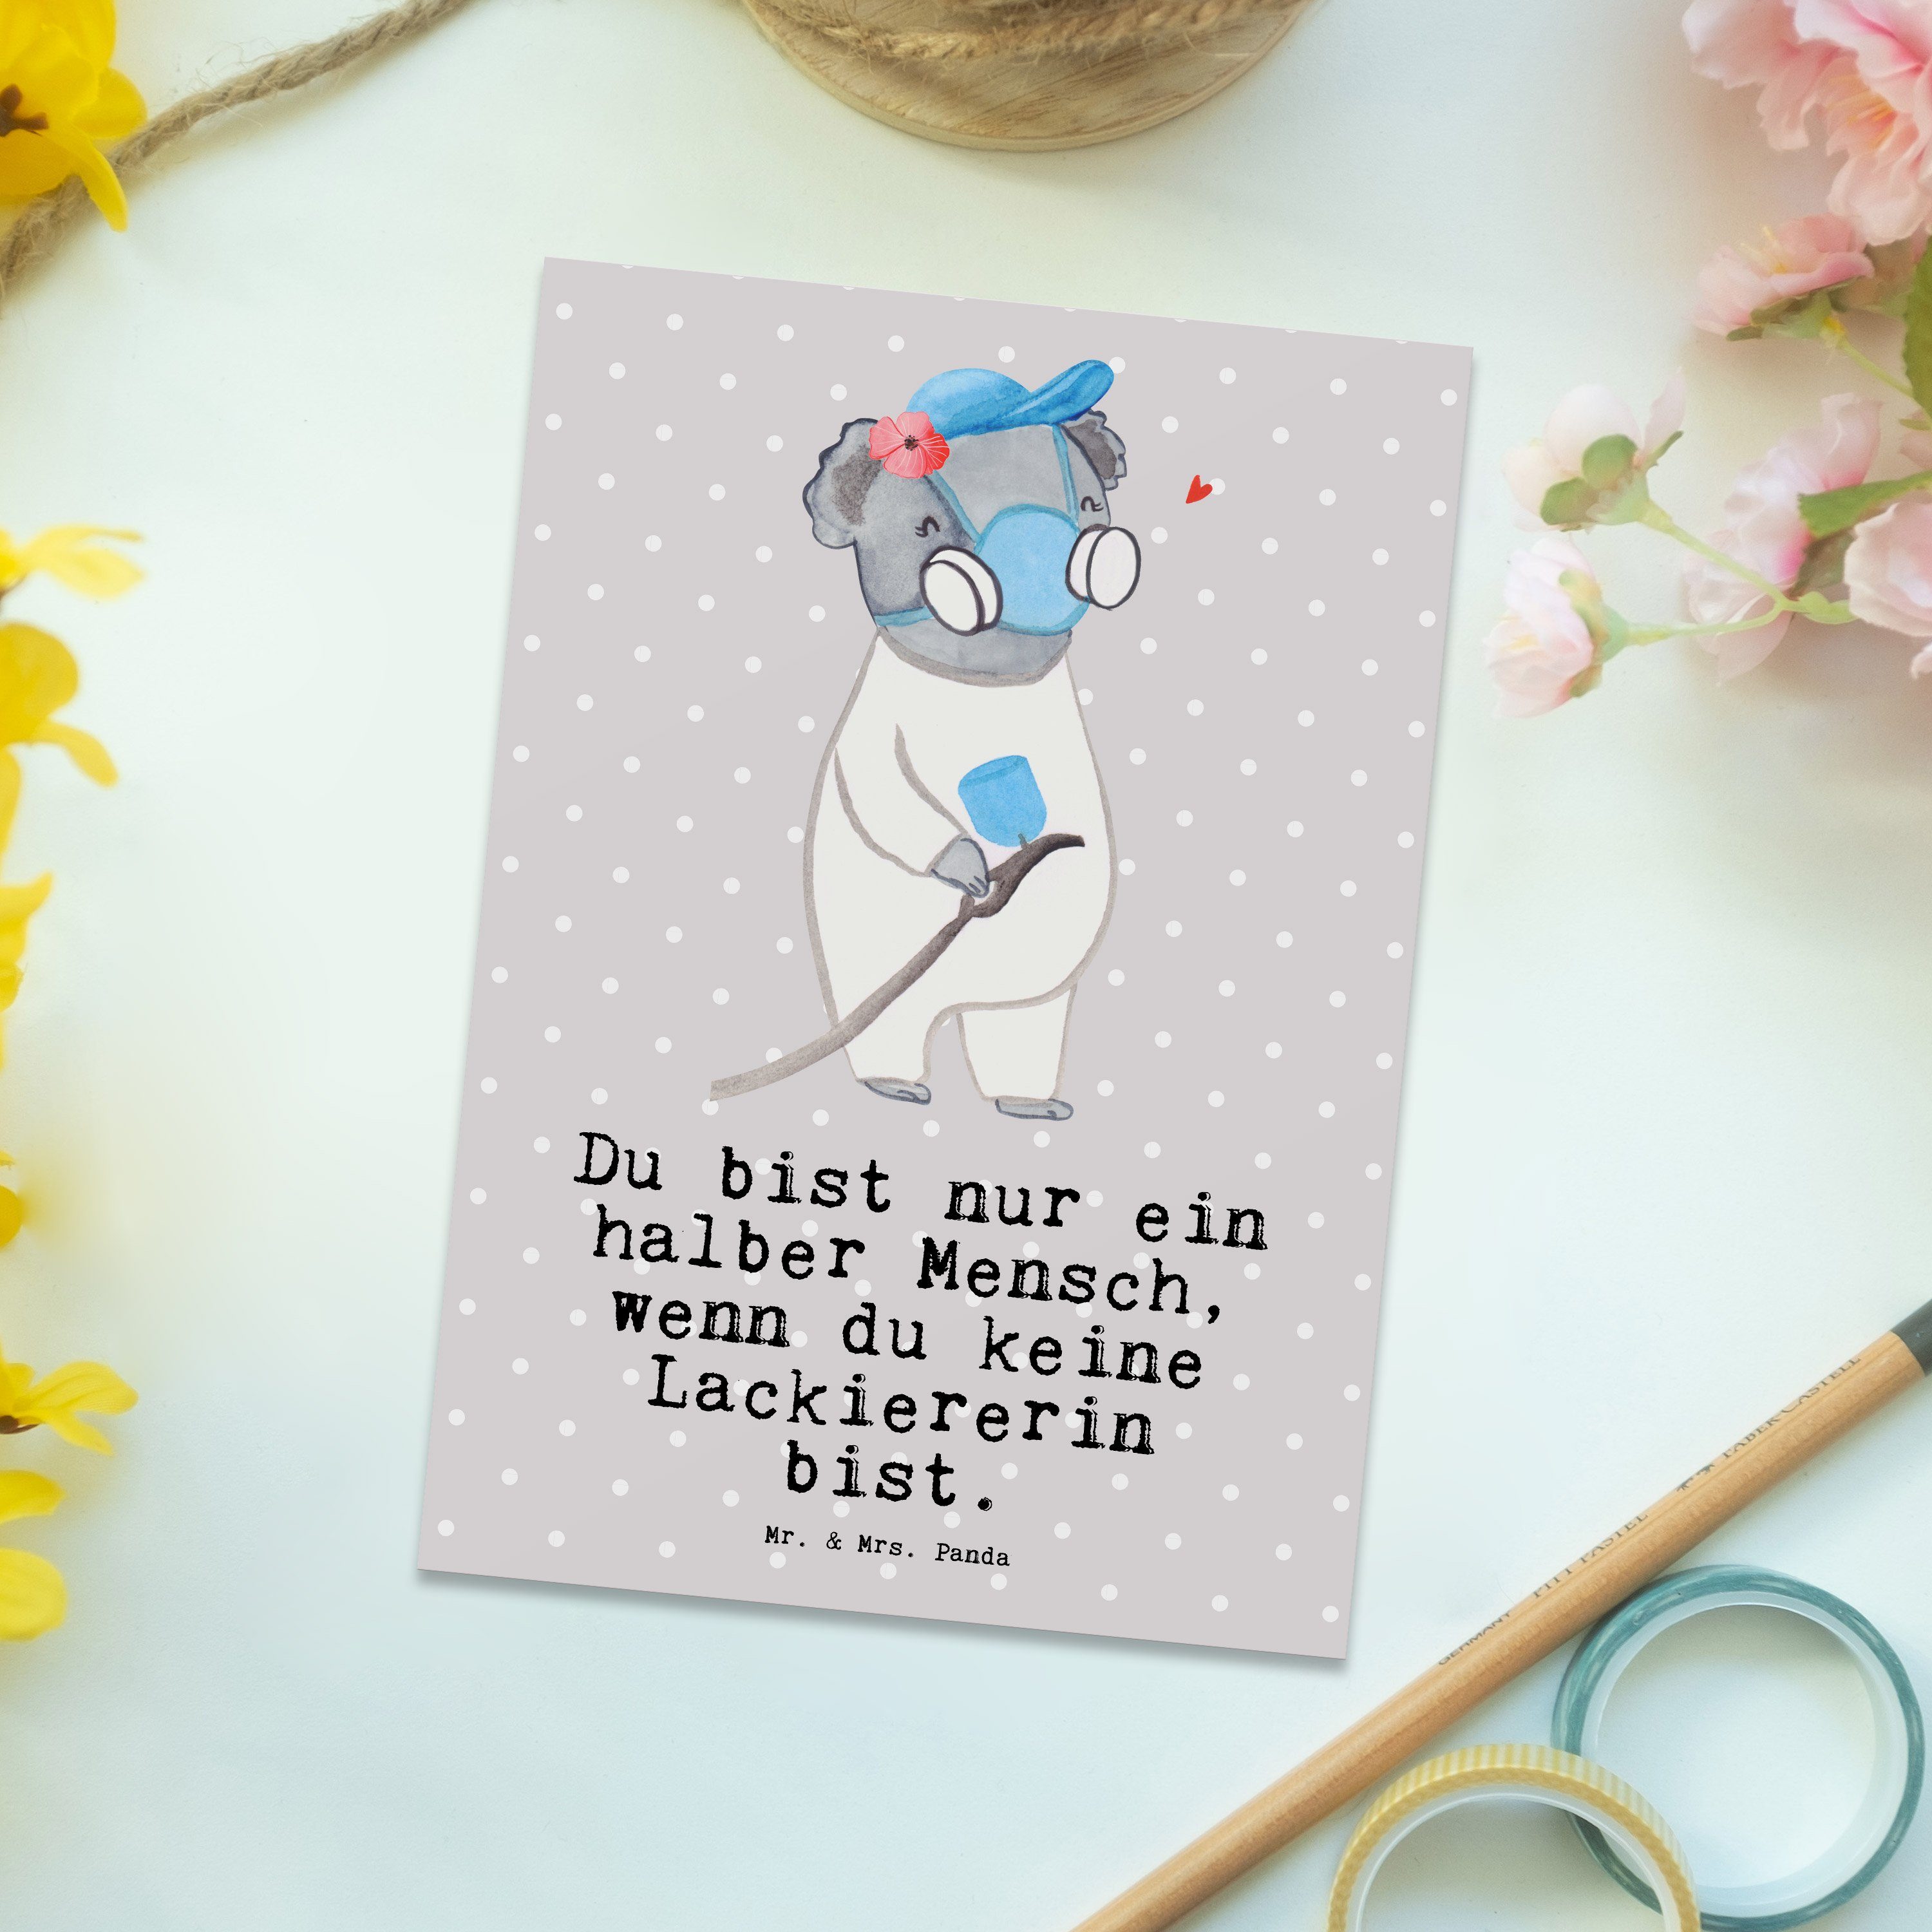 Mr. & Mrs. Panda Grau - Pastell Lackiererin - Auto Einladungskarte, mit Herz Postkarte Geschenk